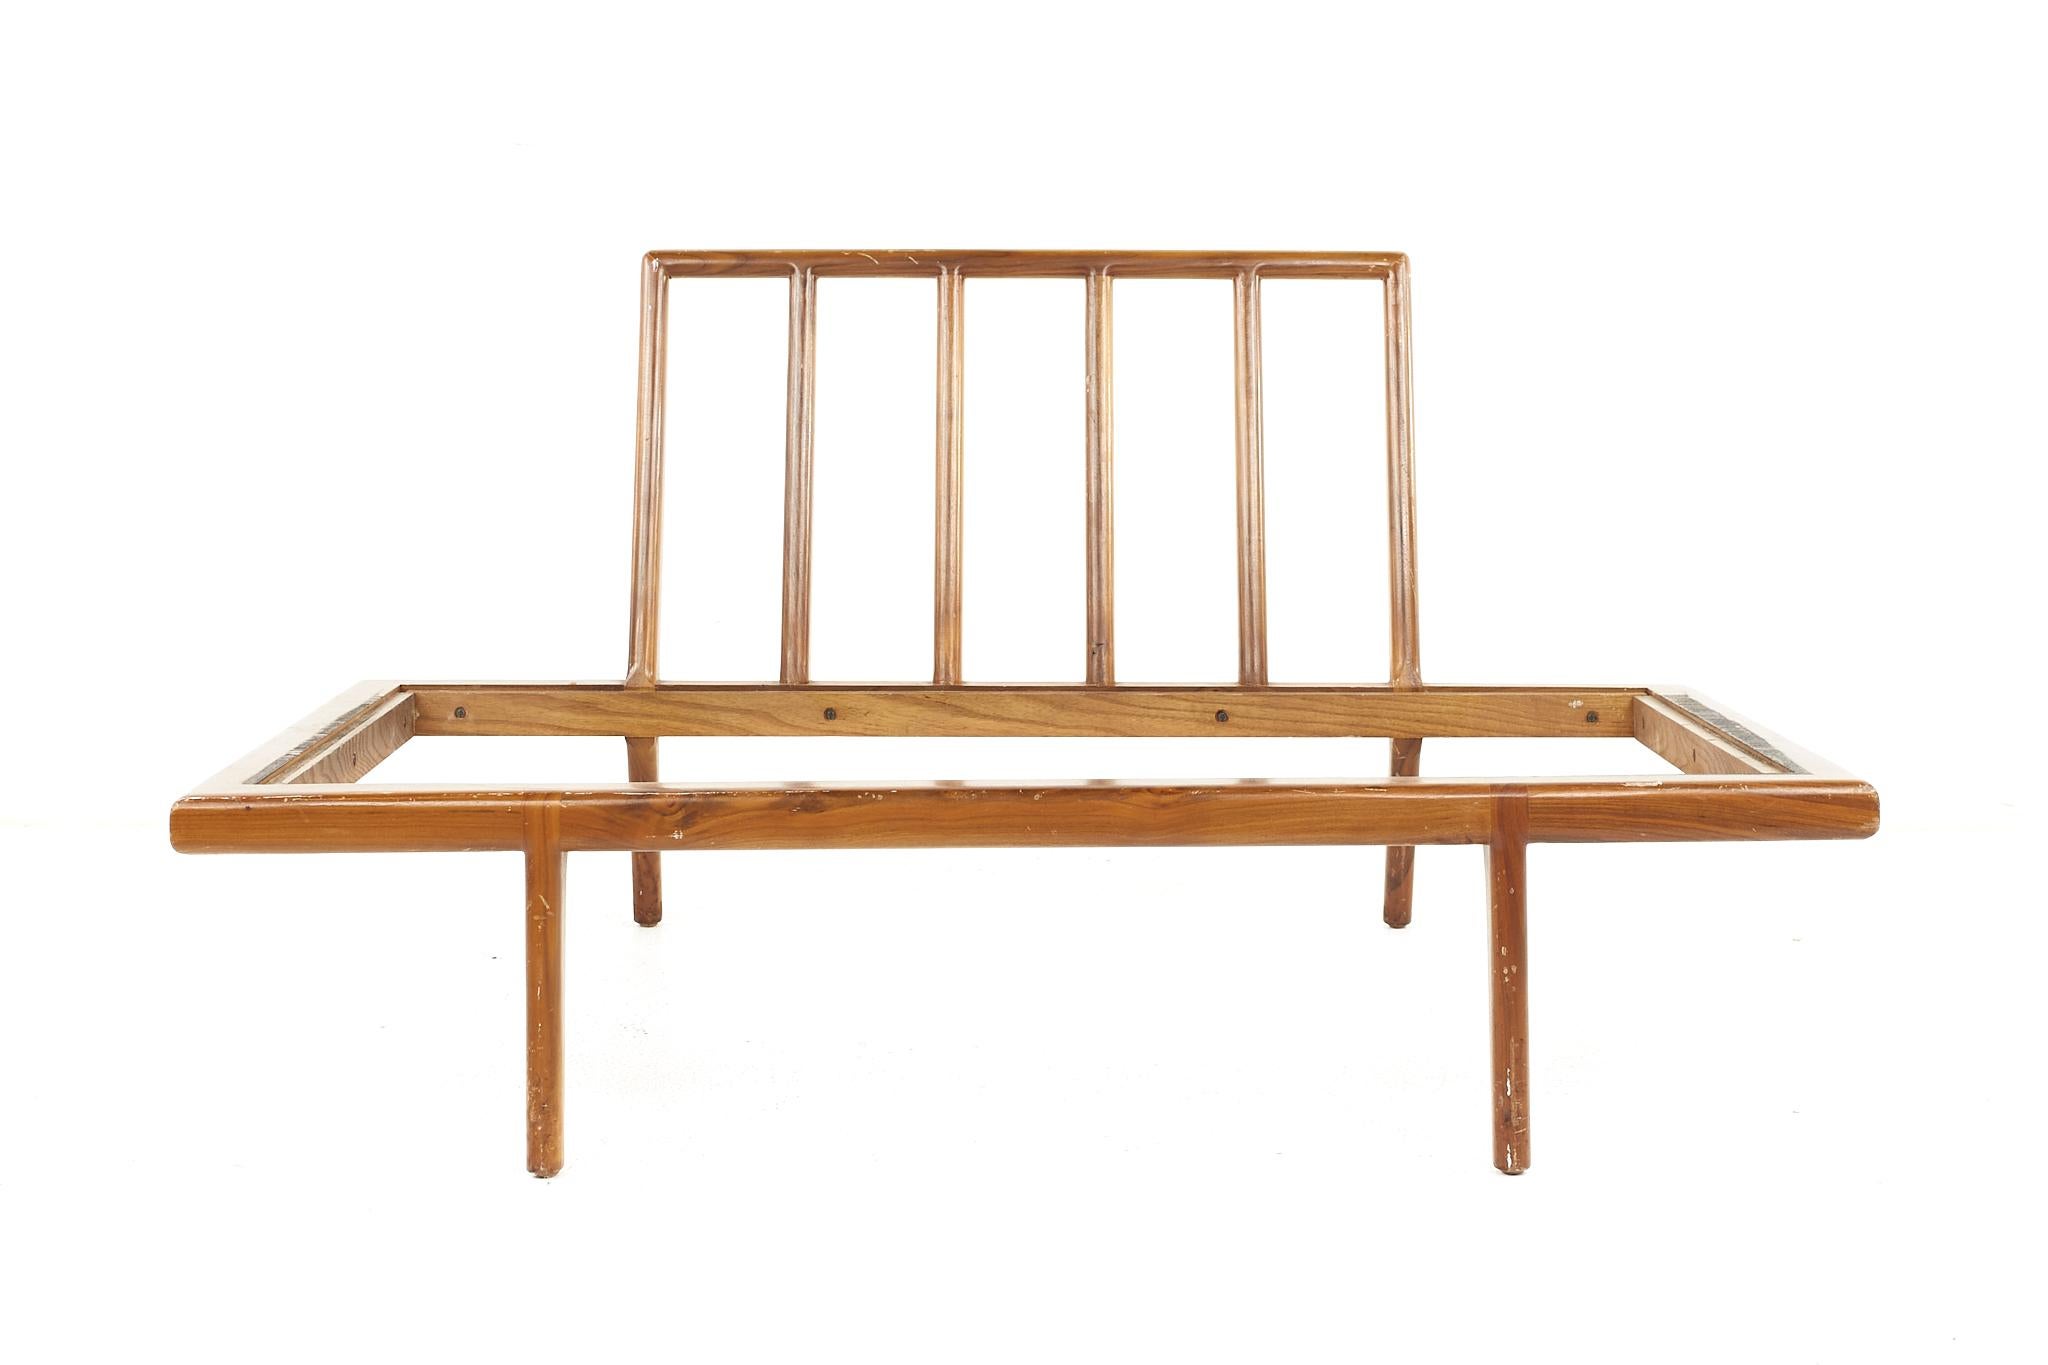 Mel Smilow mid-century wide lounge chair walnut daybed.

La chaise longue mesure : 49 de large x 27,5 de profond x 25 de haut, avec une hauteur d'assise de 11 pouces.

Tous les meubles peuvent être achetés dans ce que nous appelons un état